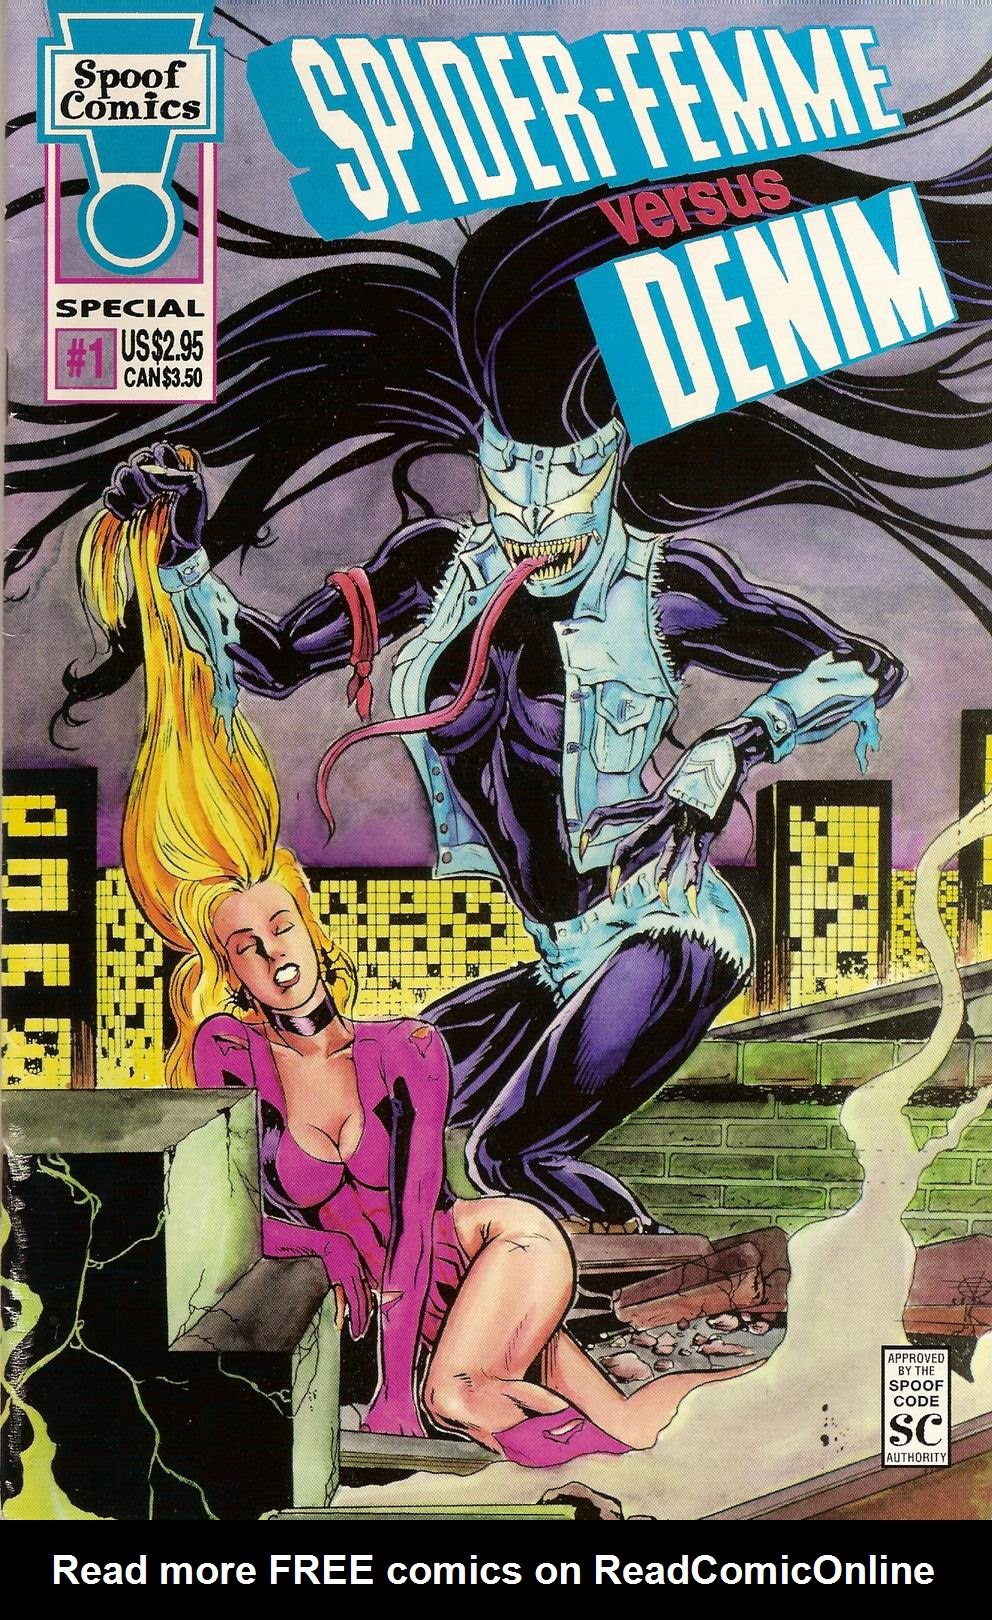 Read online Spider Femme Versus Denim comic -  Issue # Full - 1